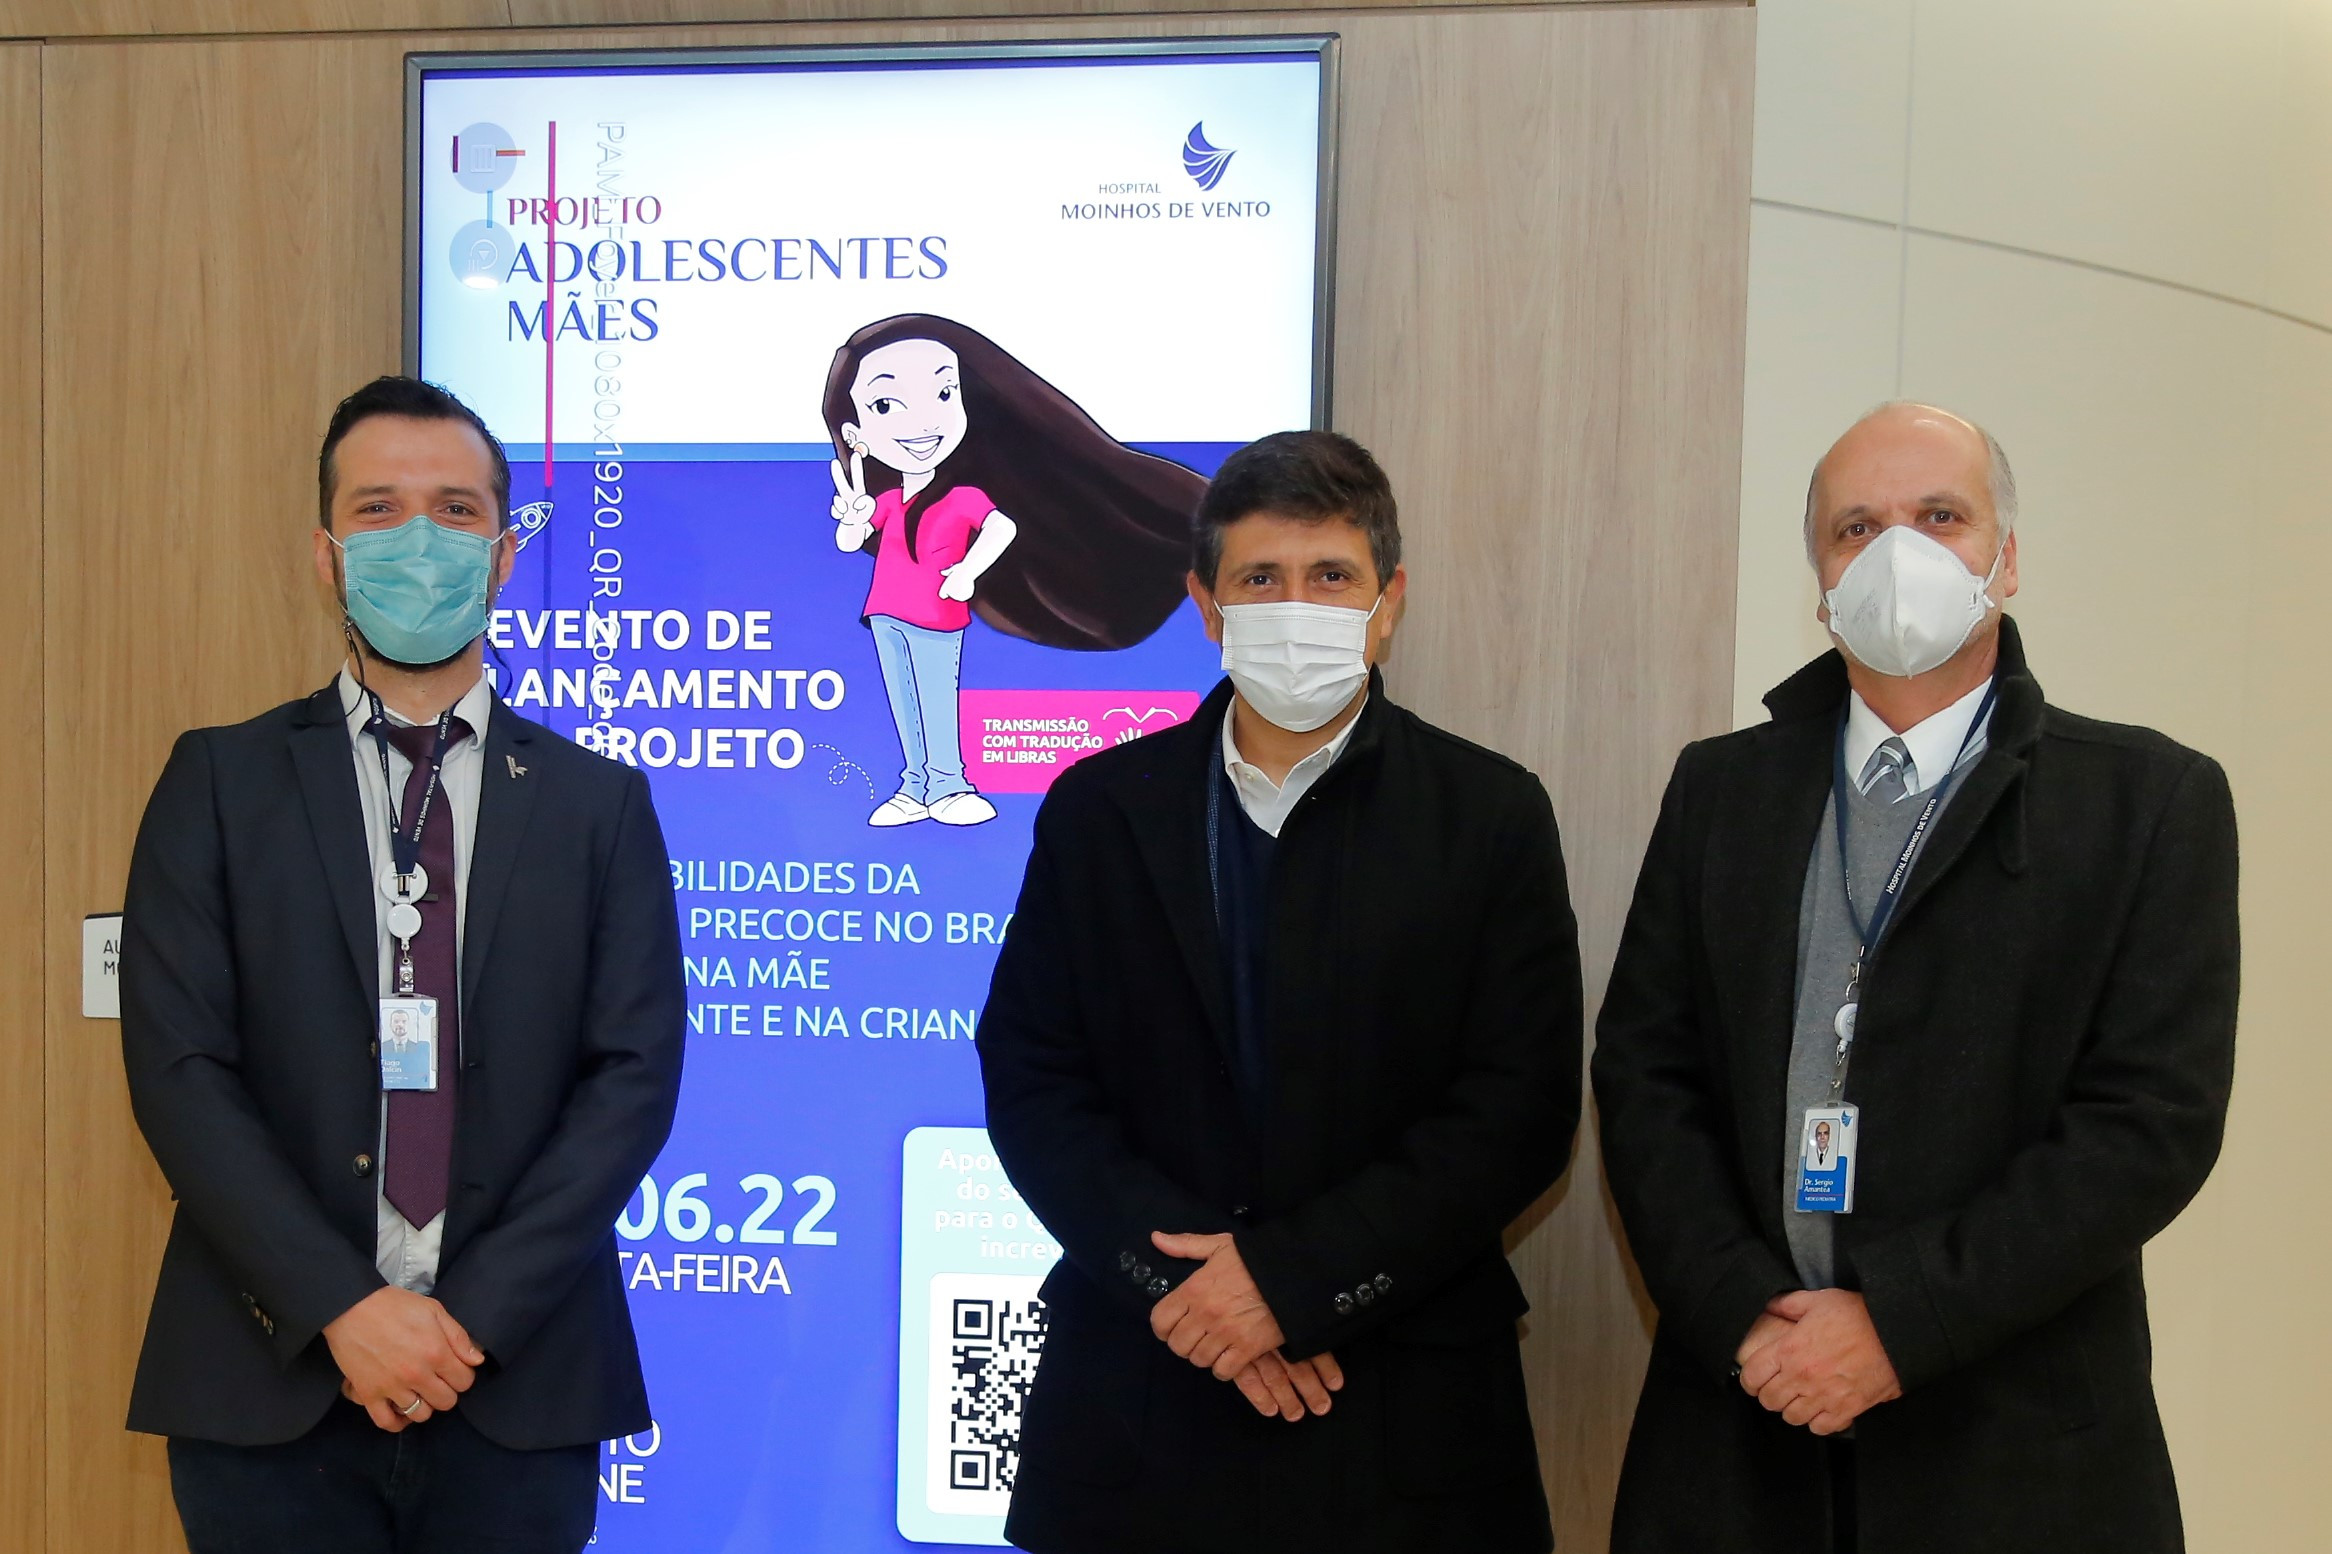 Da esquerda para direita, Dr. Tiago Chadas Dalcin, líder do Projeto Adolescentes Mães; Sérgio Amantéa; e Mohamed Parrini, CEO do Moinhos de Vento